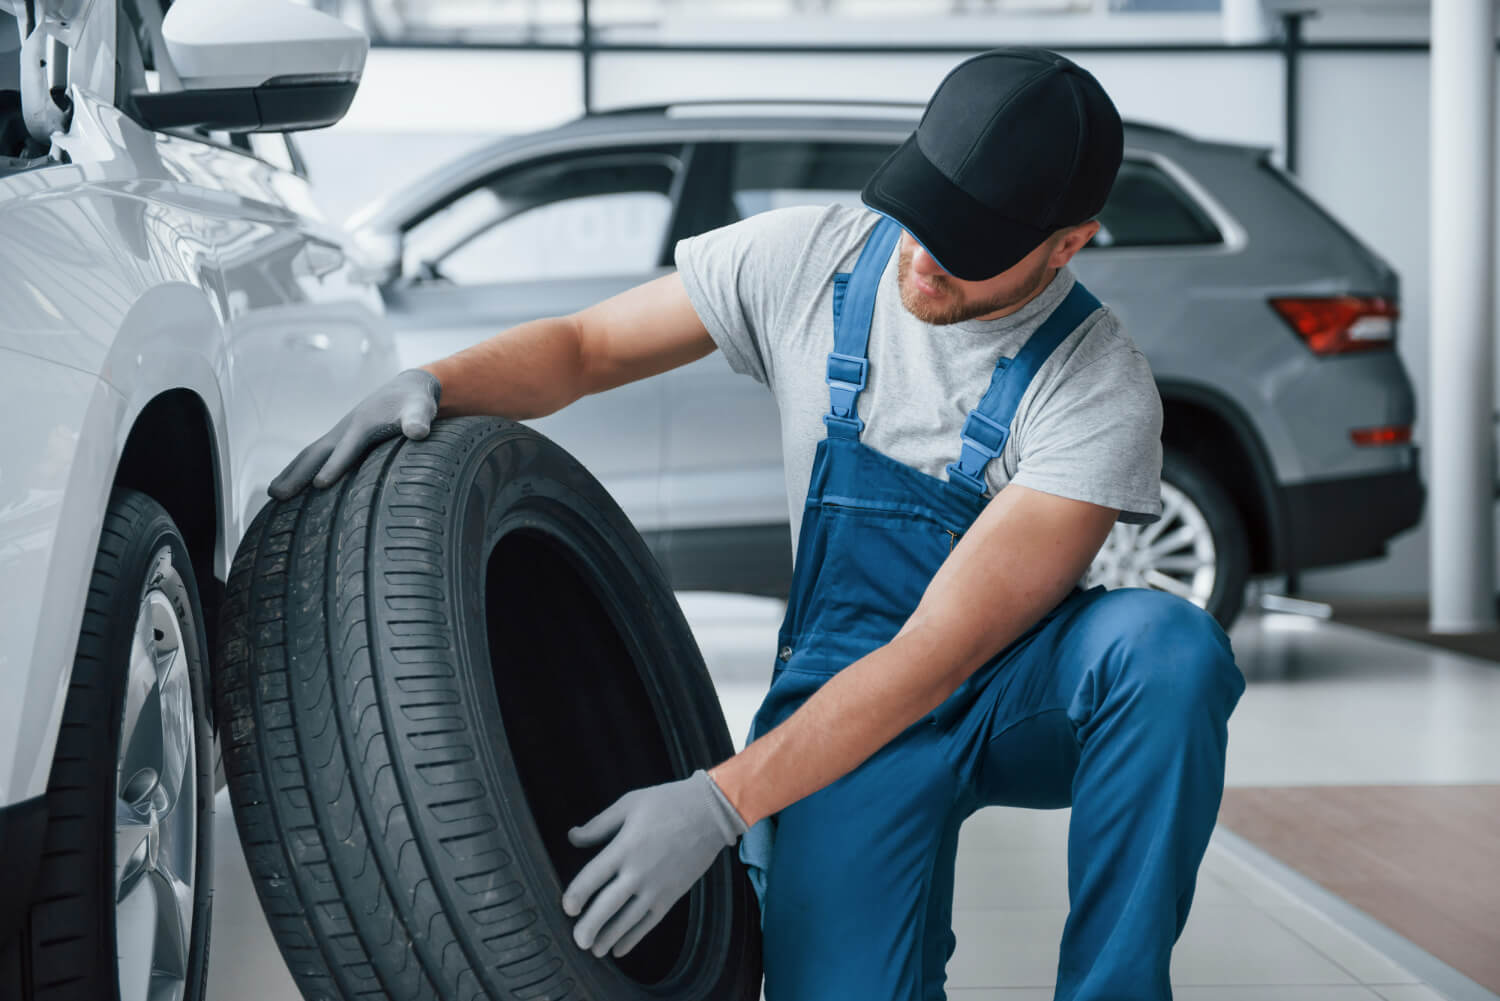 Pneus de carros aprenda a escolher pneus novos